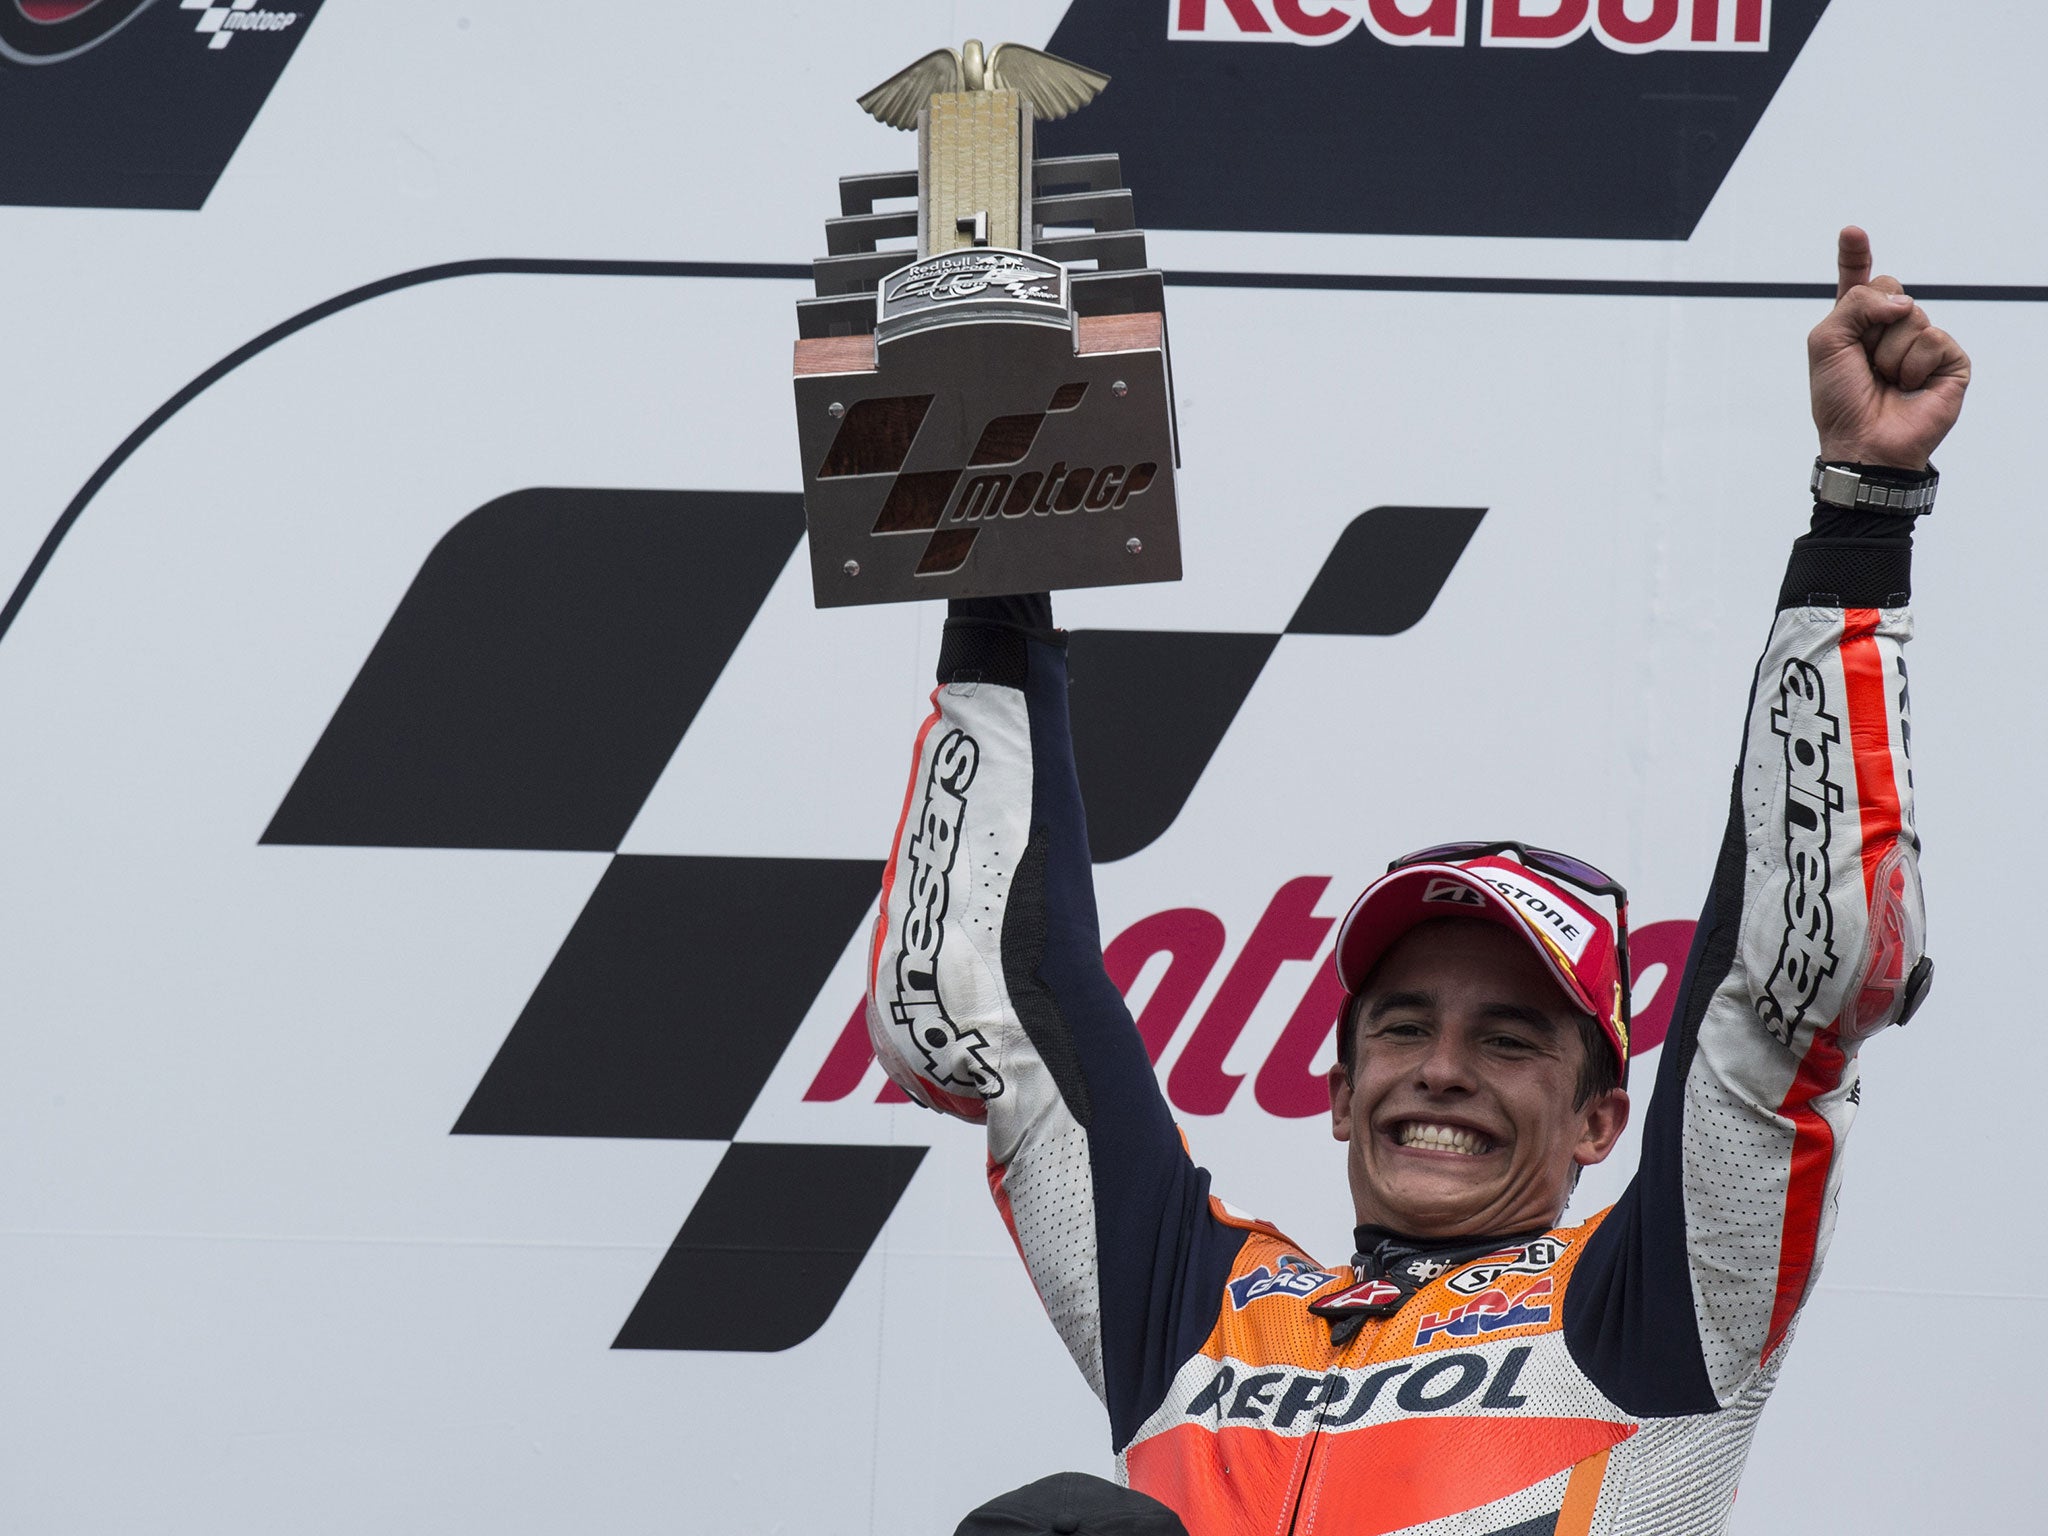 Marc Marquez celebrates winning the Indianapolis Grand Prix